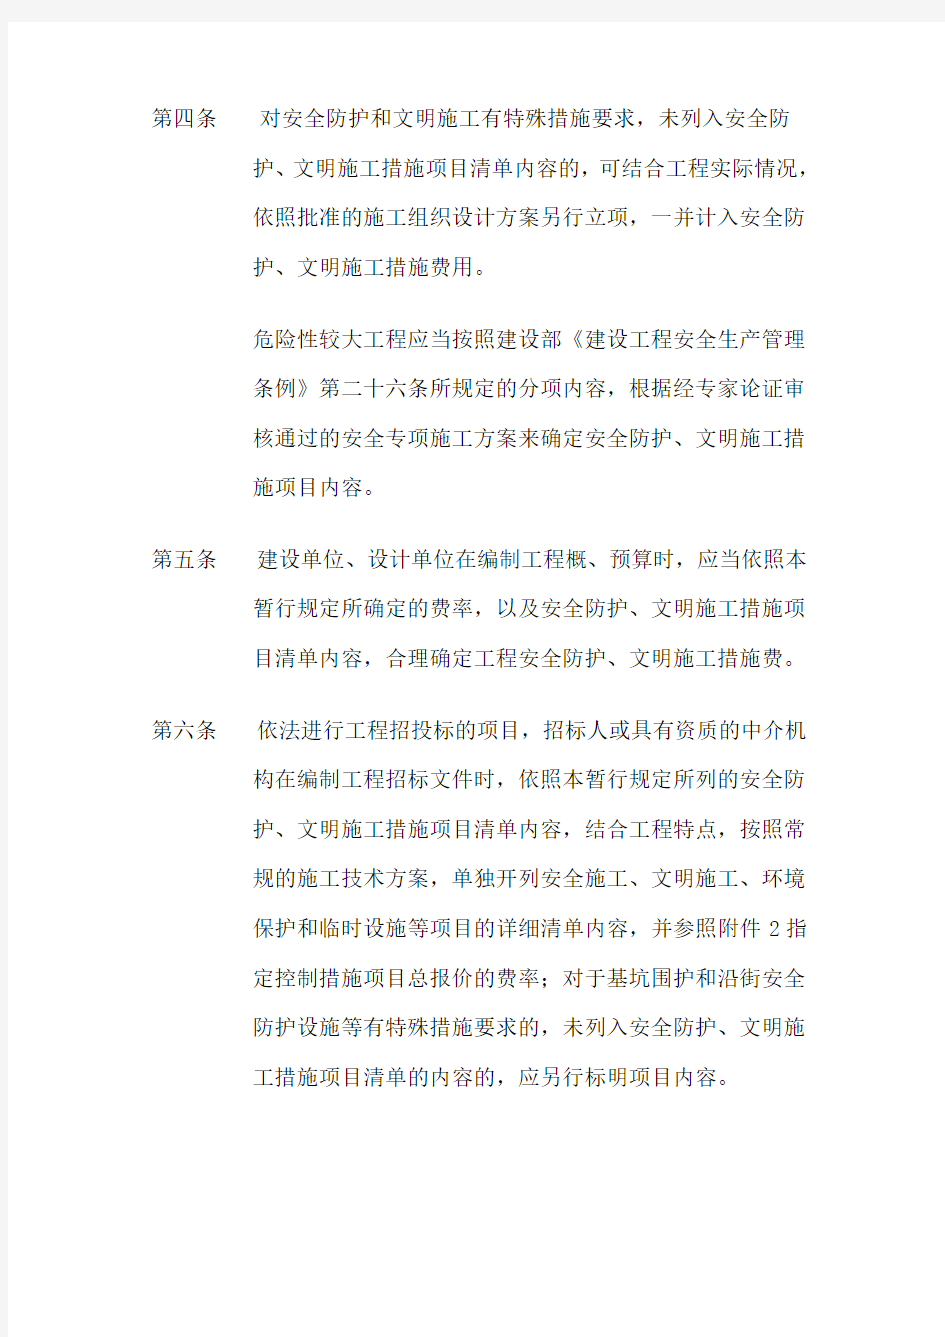 上海市建设工程安全防护文明施工措施费用管理暂行规定